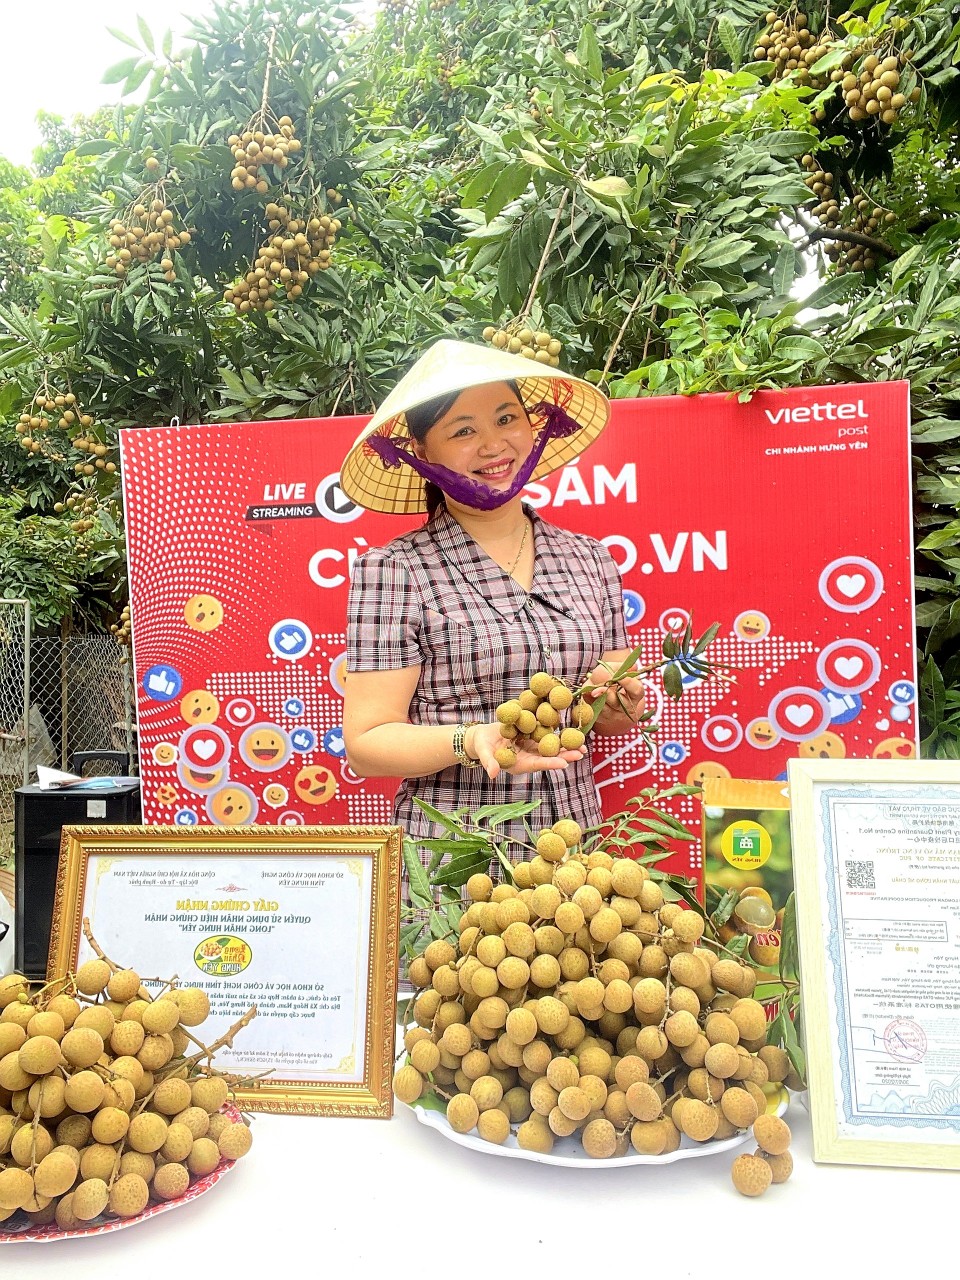 Ra vườn nhãn livestream, nông dân Hưng Yên bán hàng chục tấn nhãn lồng đặc sản - Ảnh 2.